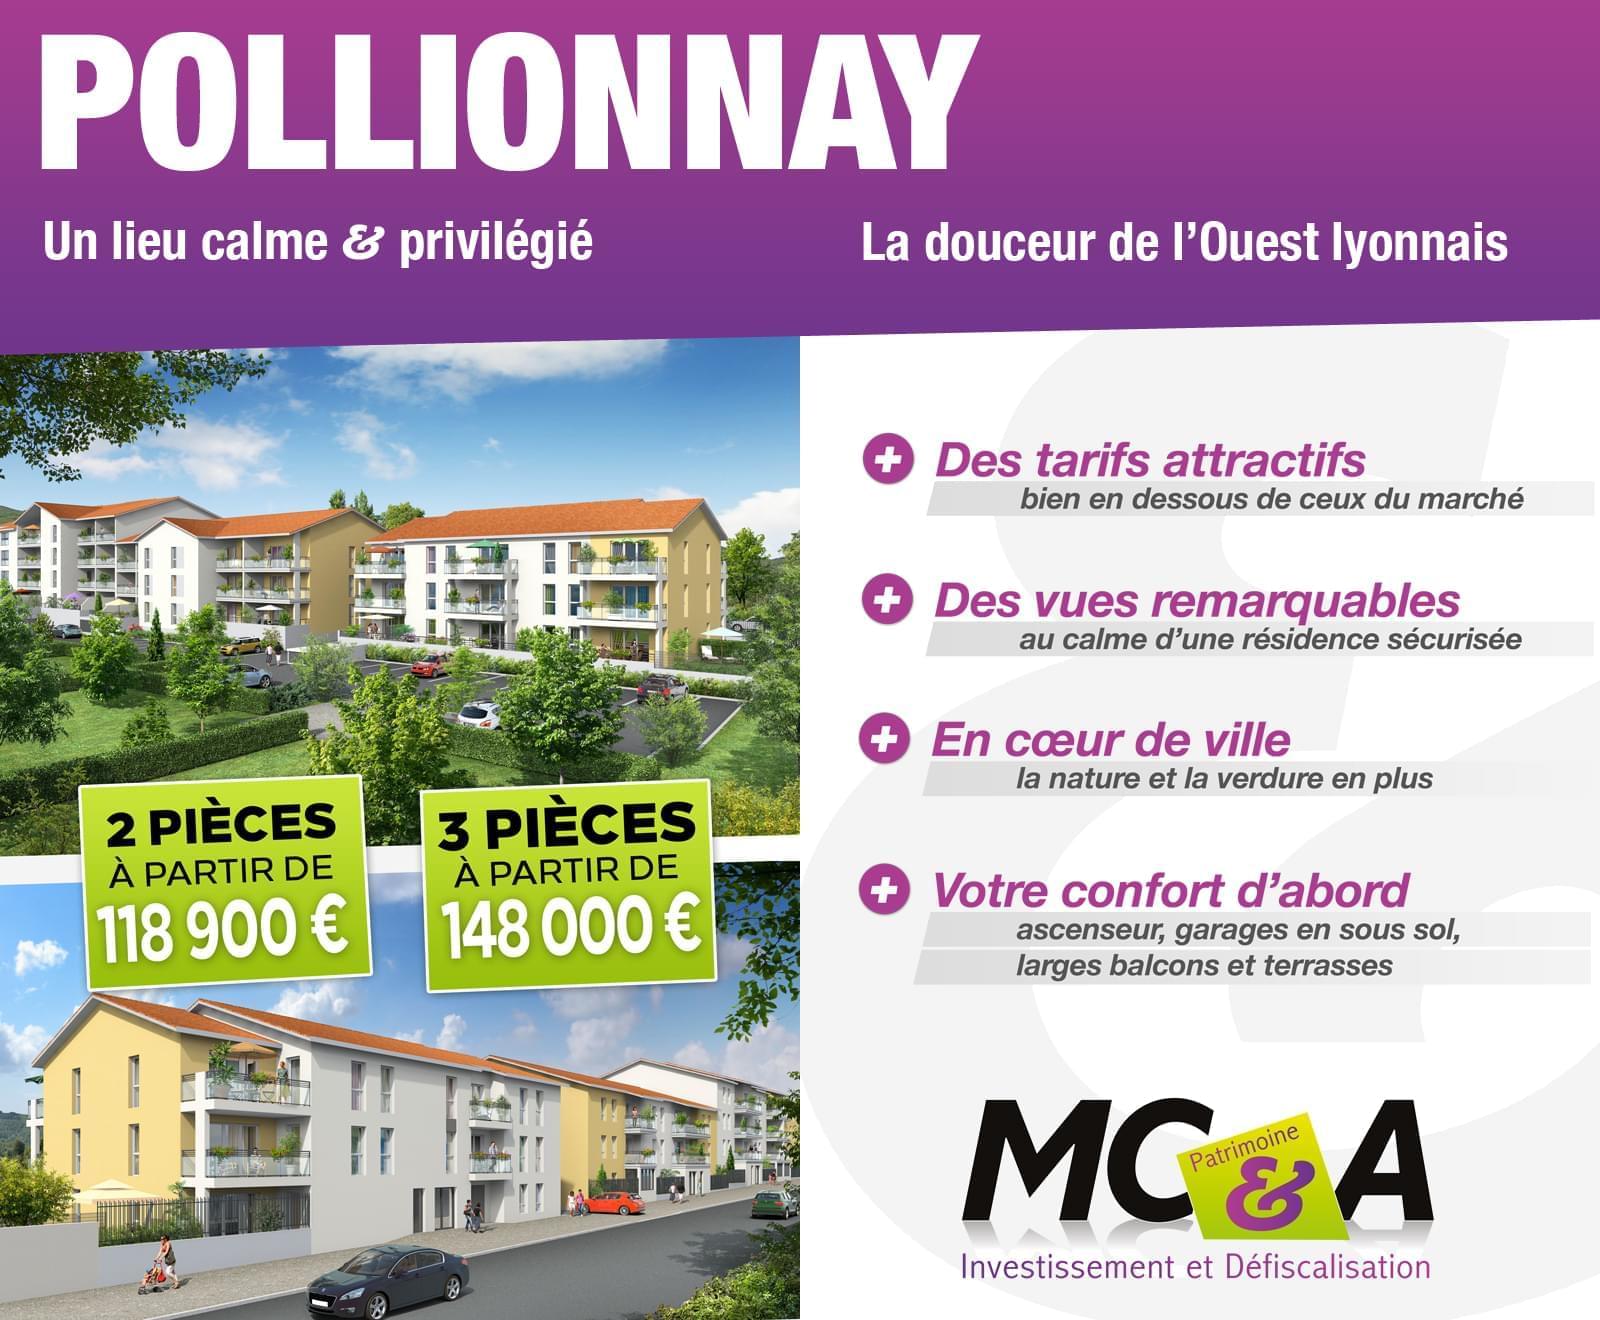 Résidence à Pollionnay Beaux volumes et surfaces, Appartements lumineux, Idéal pour habiter ou investir,